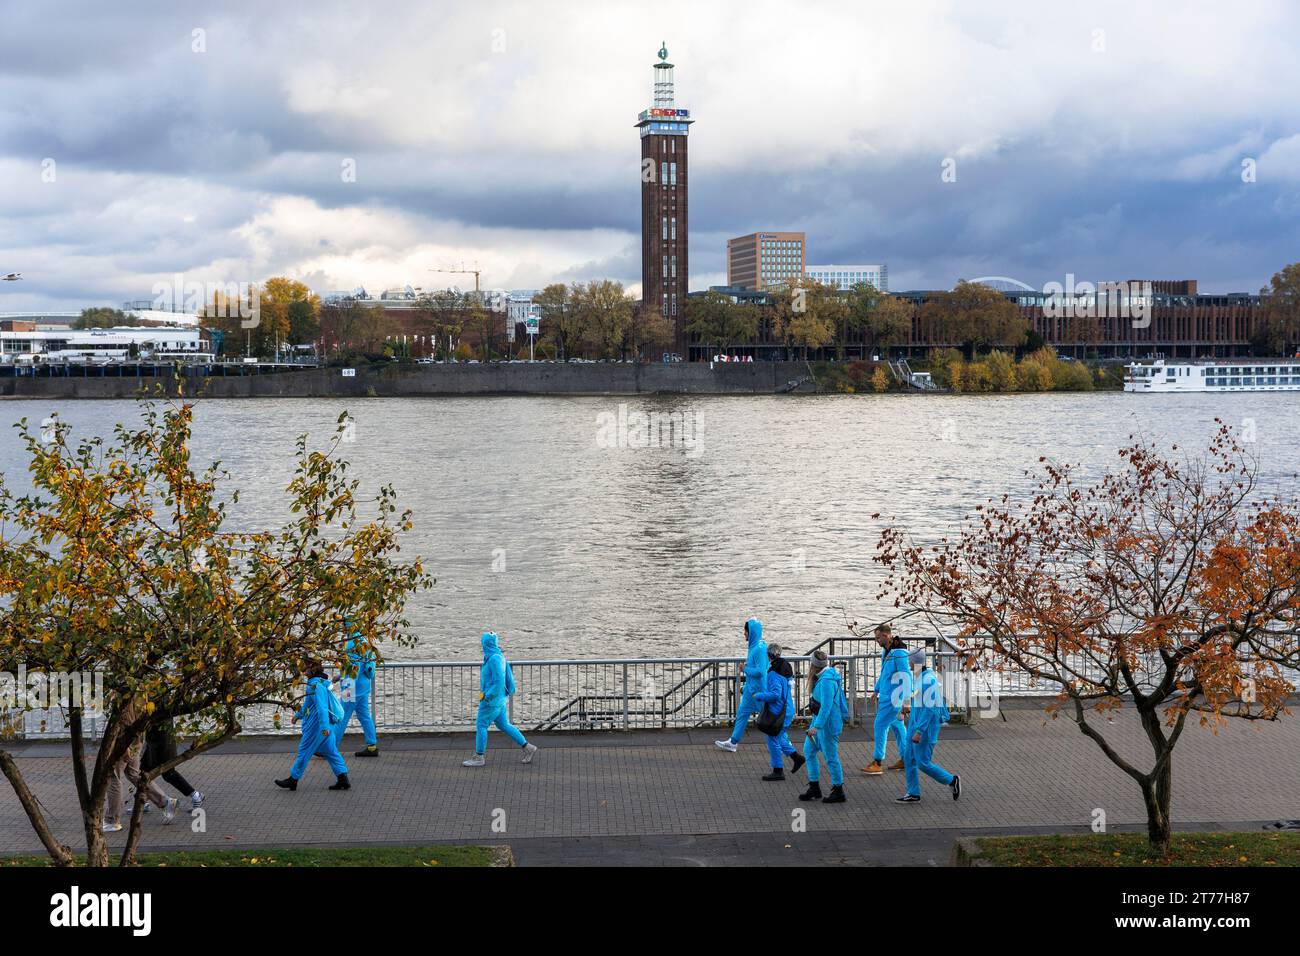 Am Tag der Eröffnung der Karnevalsveranstaltung am 11.11.23 spaziert eine Gruppe von Menschen in blauen Overalls am Ufer des Rheins entlang, dem alten Turm des f Stockfoto